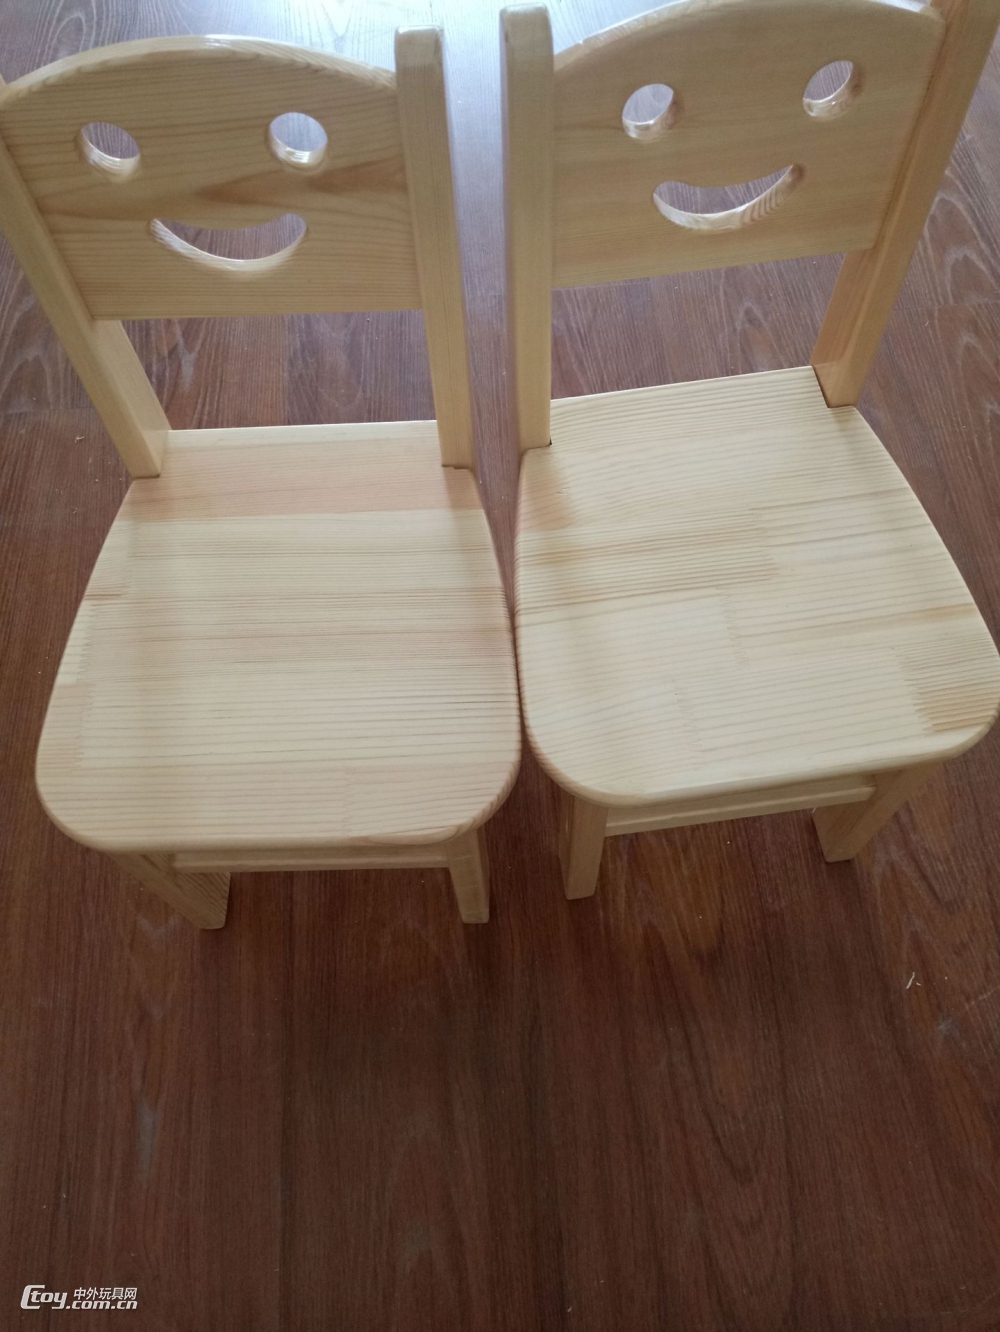 广西南宁可定制室内外学生幼儿园课桌椅 儿童学习桌樟子松桌椅